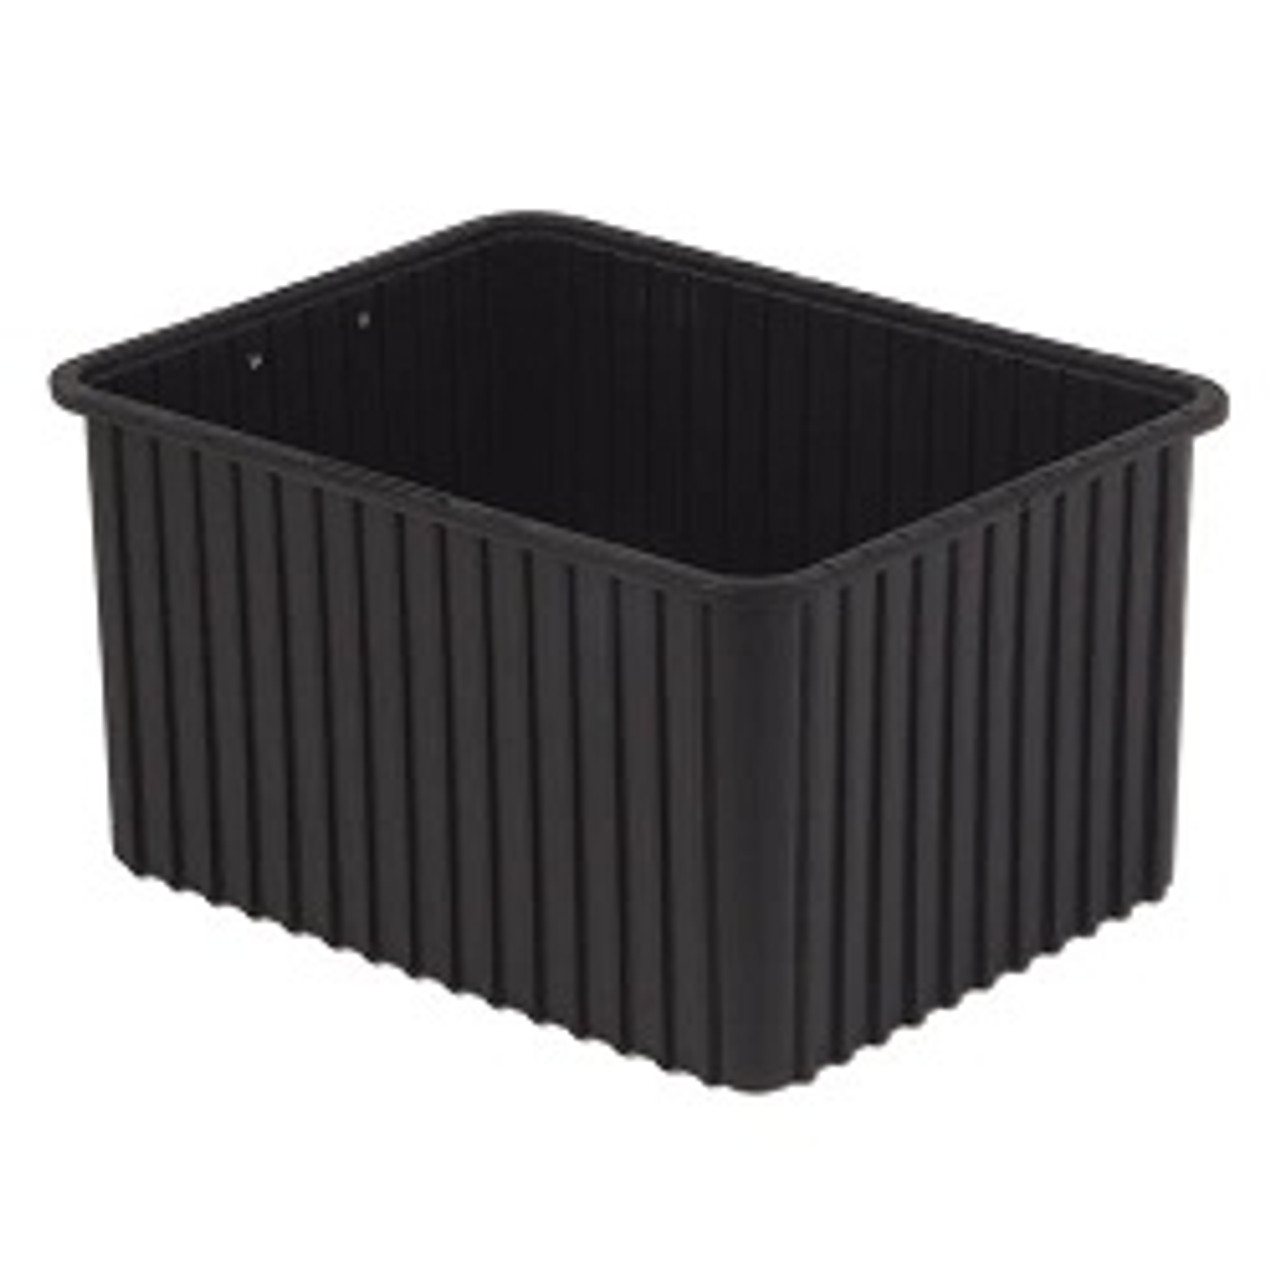 ESD-Safe Tote Box Containers: Inside:20.3x15.3x12.0, Black, 3/Case,  Price Per Case, LB-DC30120-XL